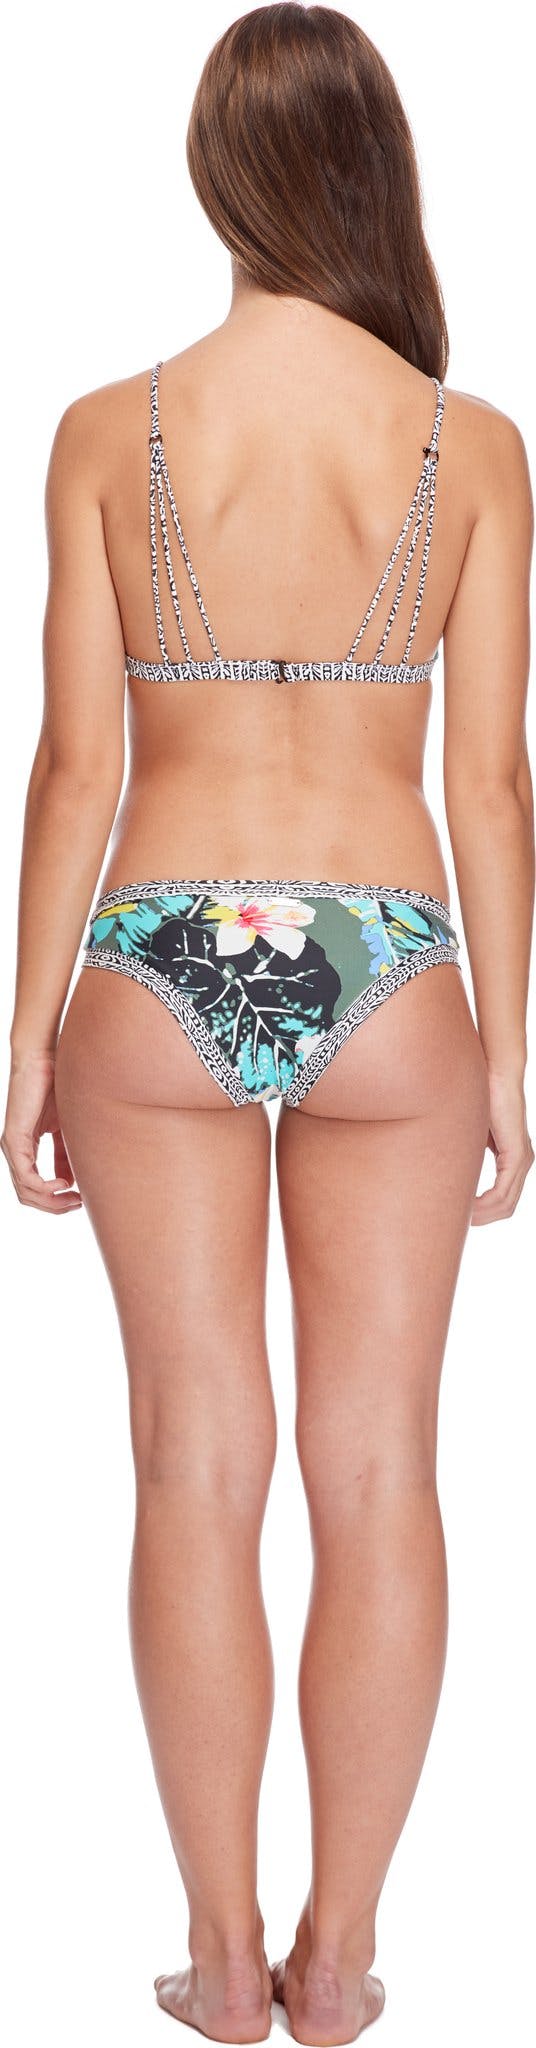 Numéro de l'image de la galerie de produits 3 pour le produit Culotte de bikini Oahu Audrey - Femme